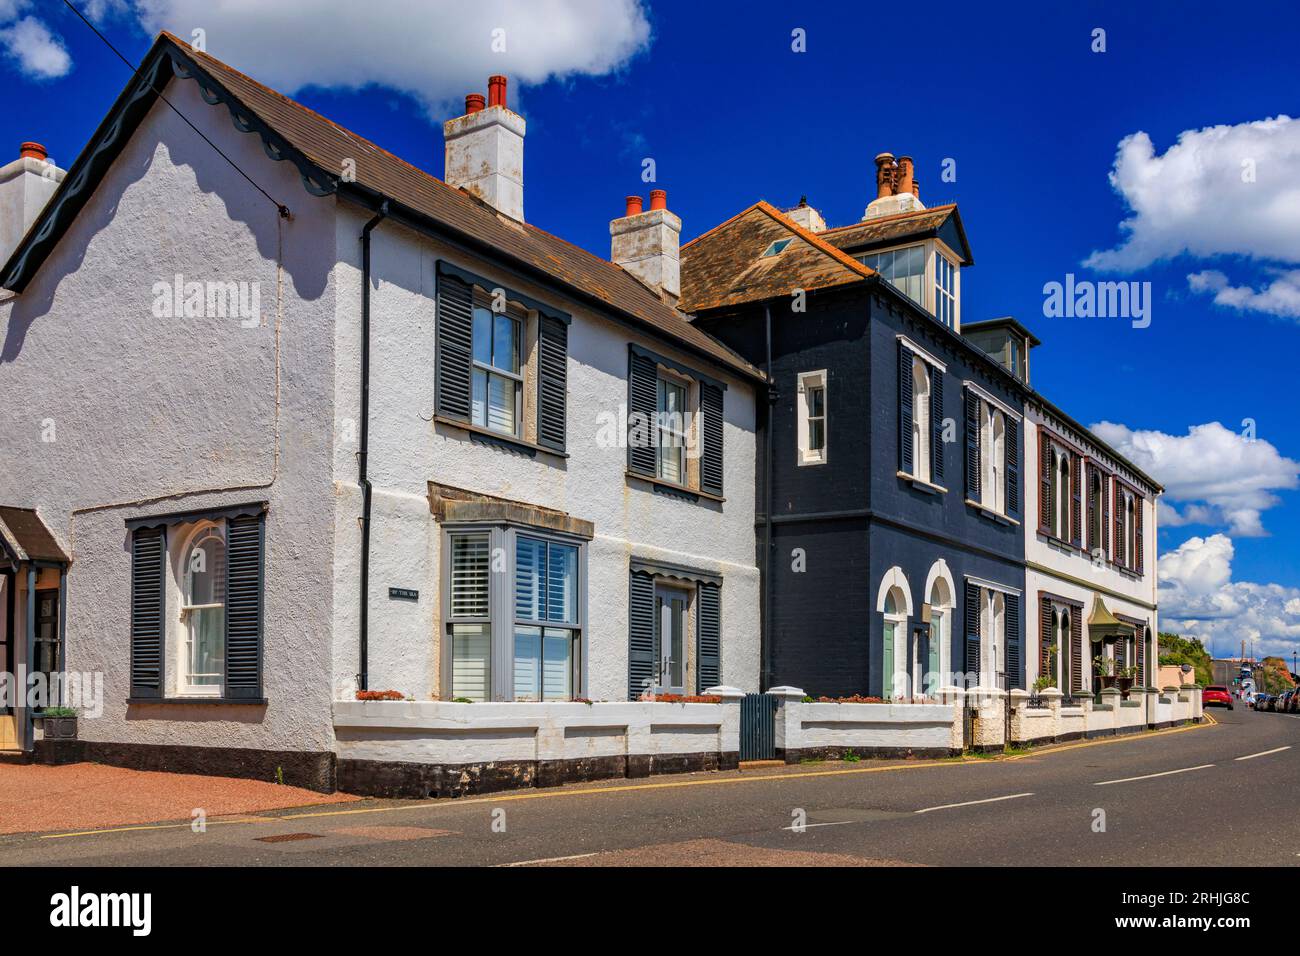 L'architecture élégante des maisons en bord de mer à Budleigh Salterton, Devon, Angleterre, Royaume-Uni Banque D'Images